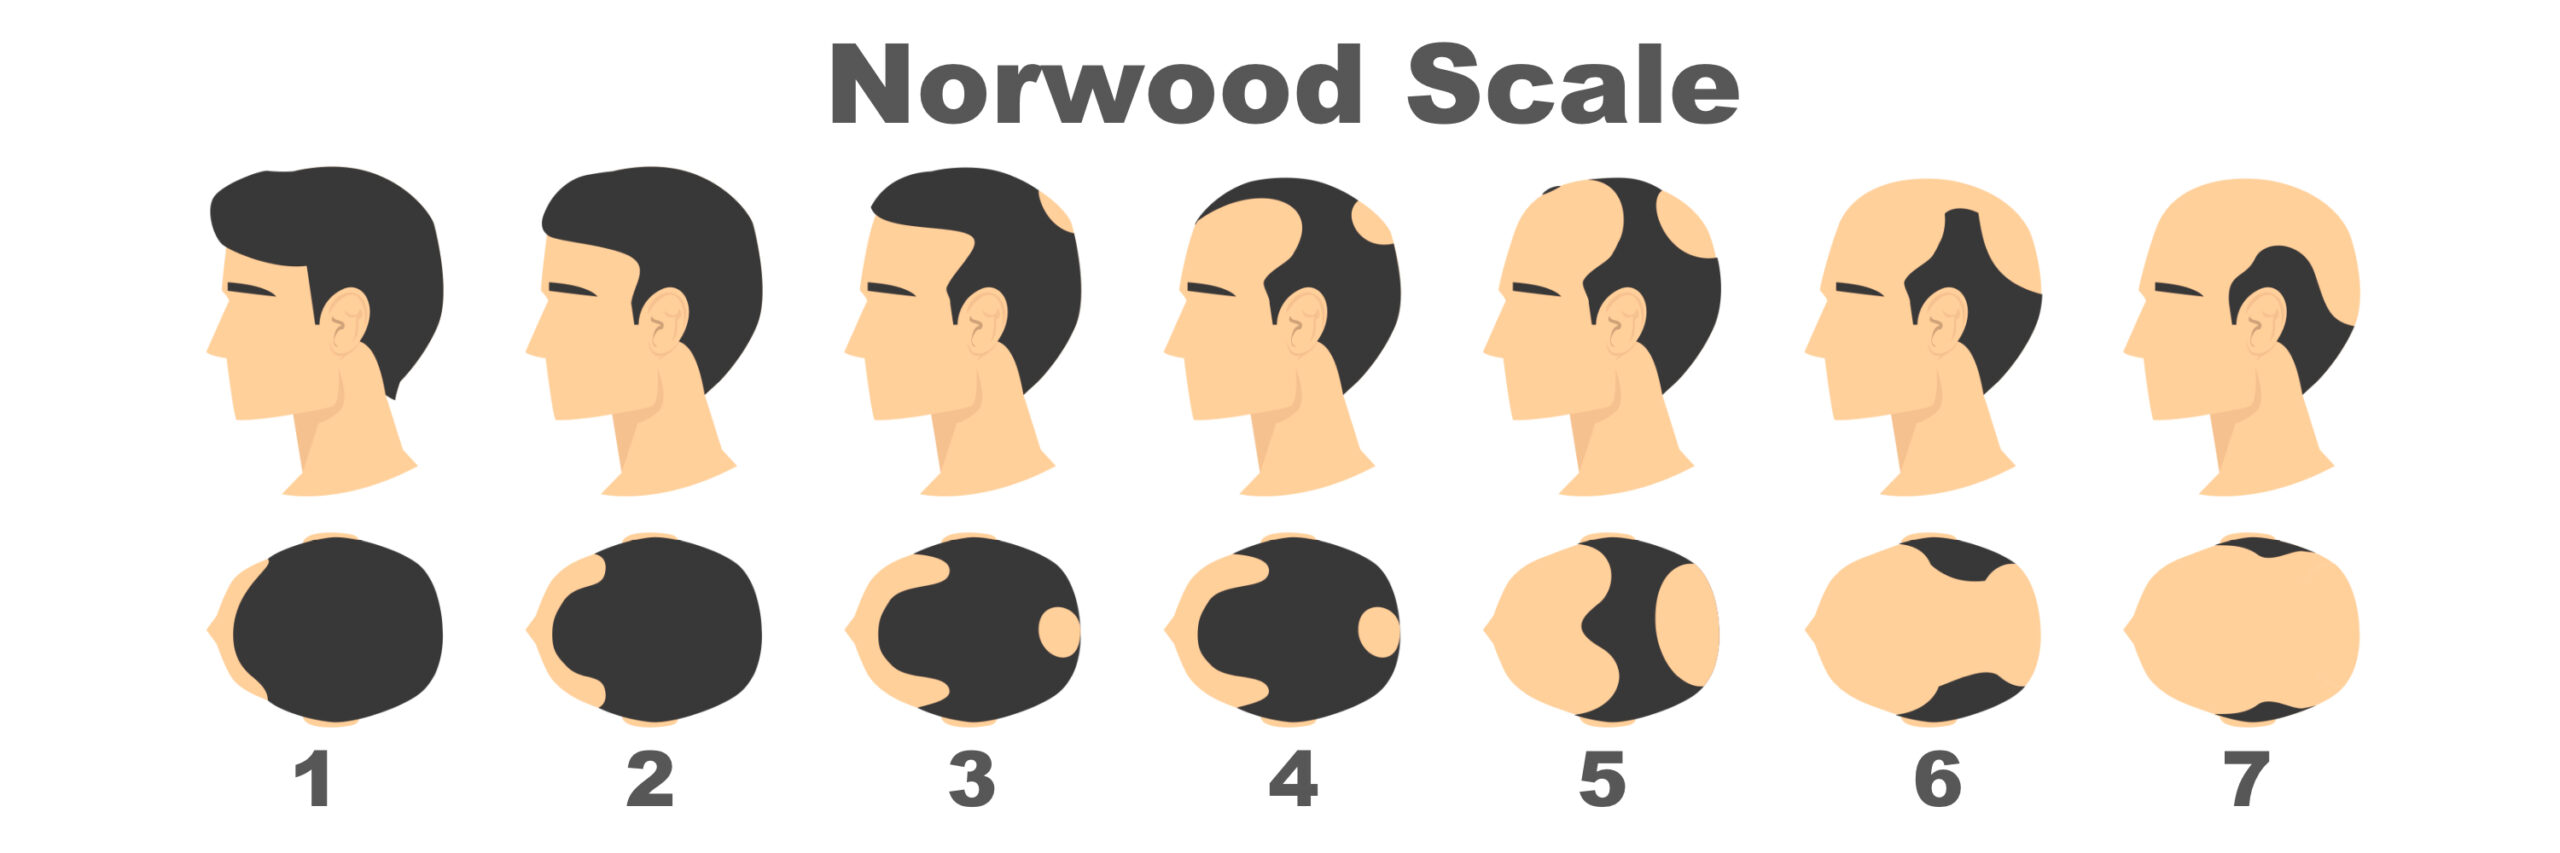 Norwood-scale-7-scaled